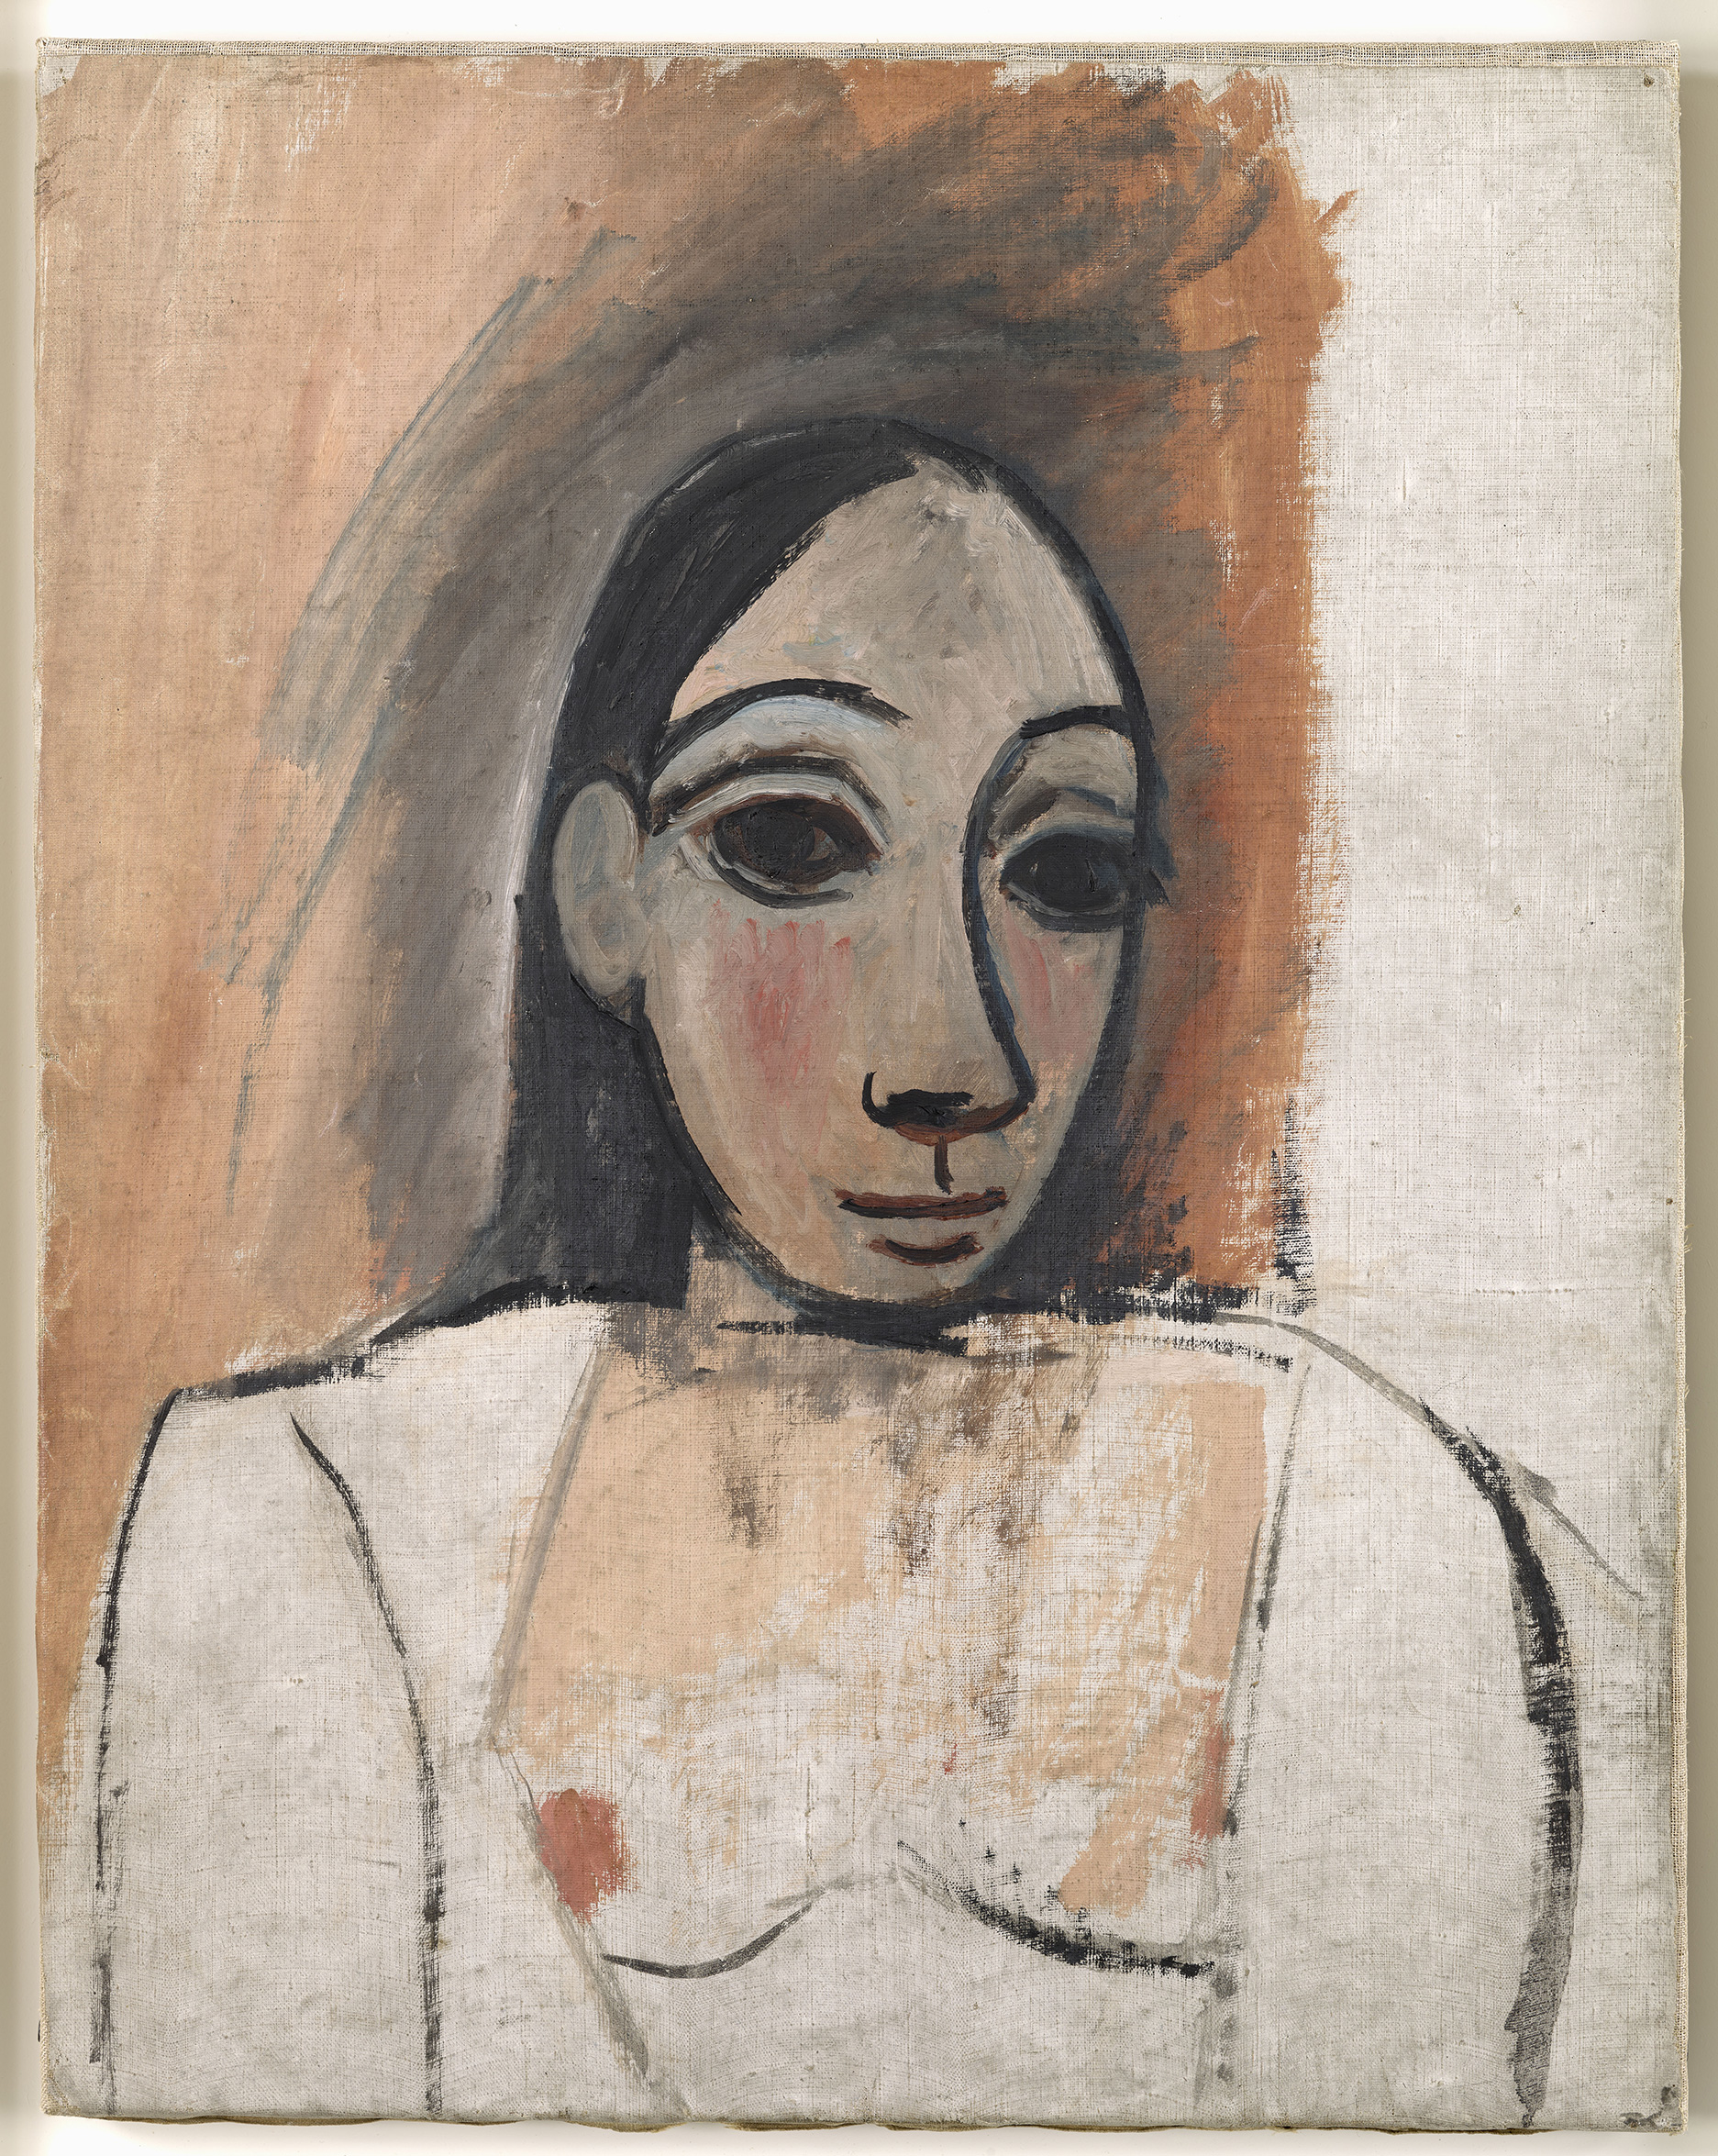 Picasso - Buste de femme (étude pour "Les Demoiselles d'Avignon") - MP18 - 18-512286